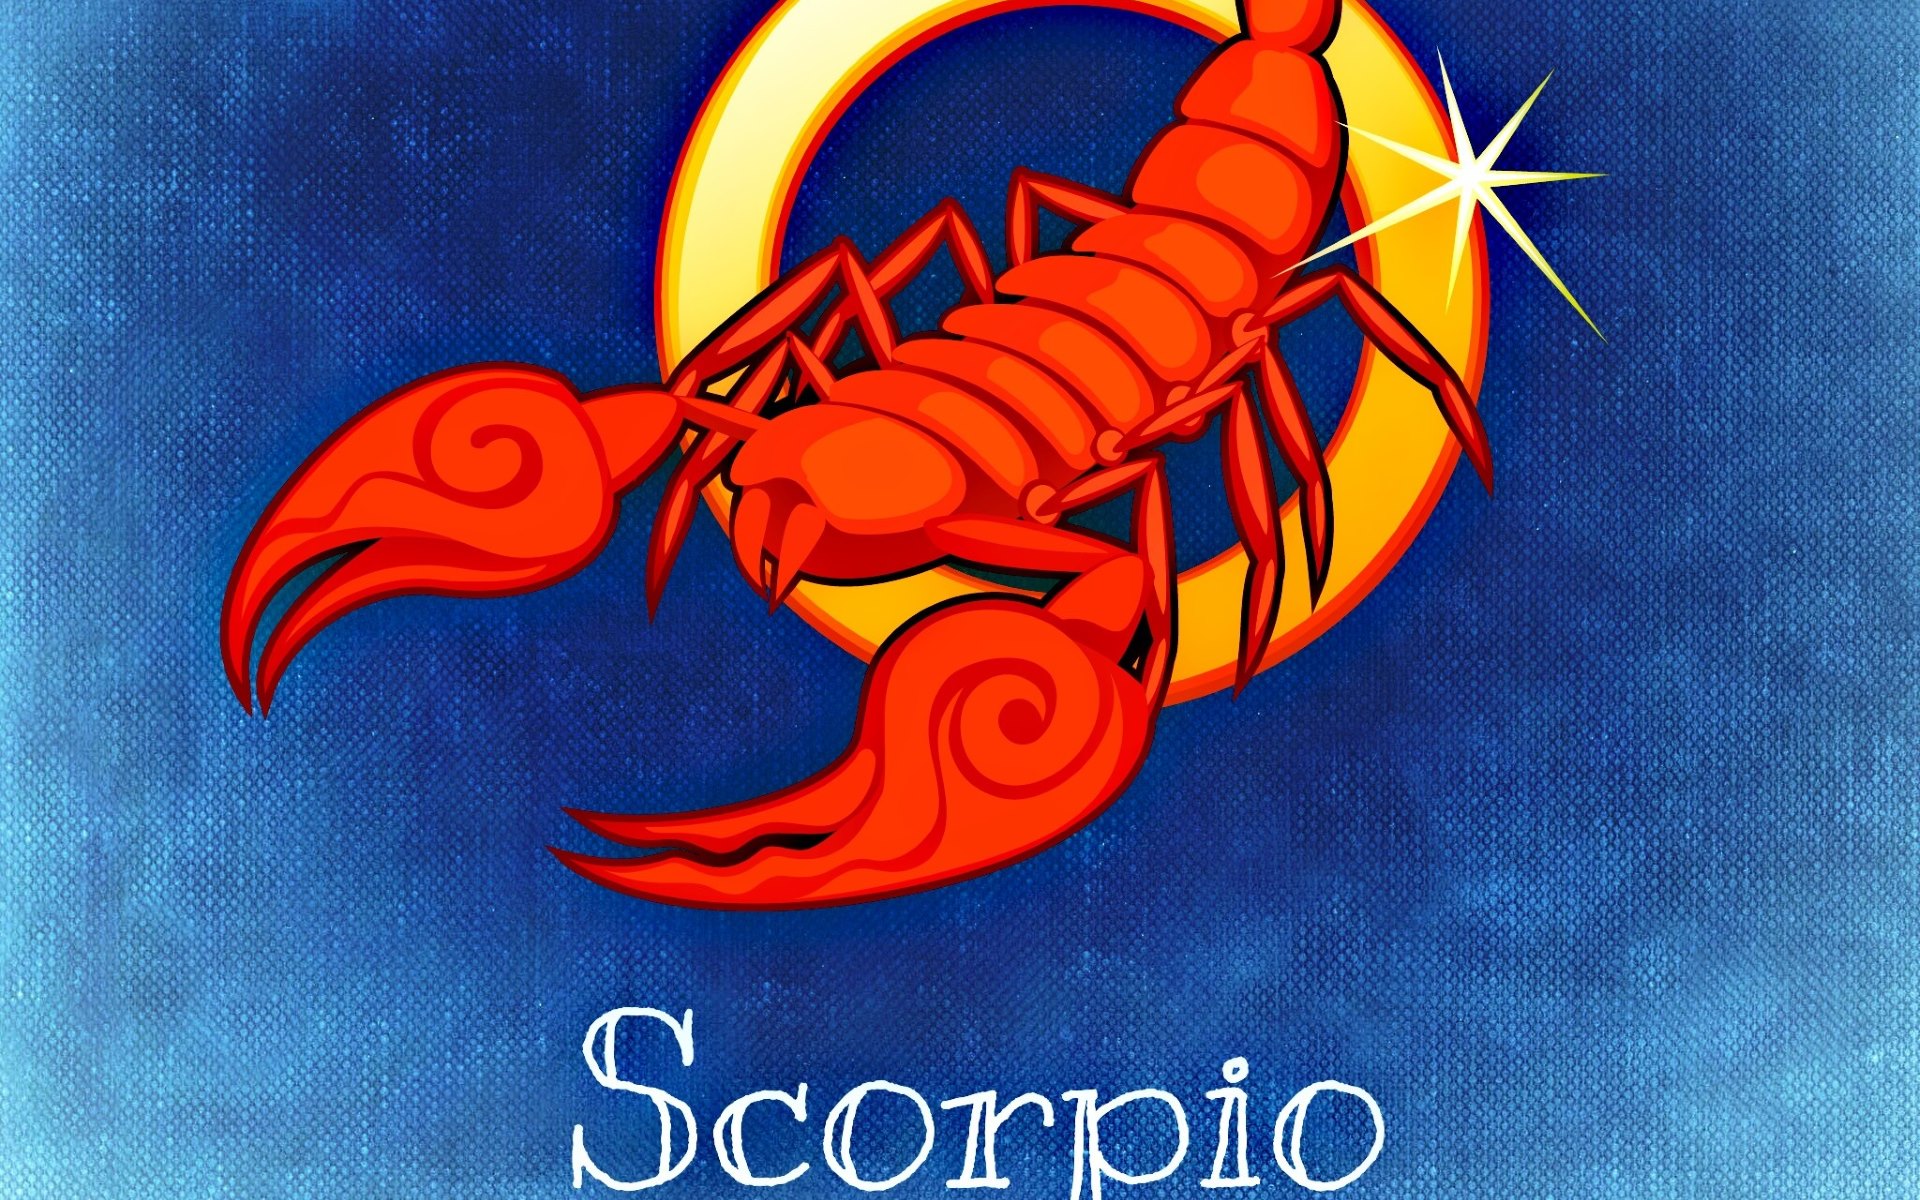 Astrology Desktop Background Image